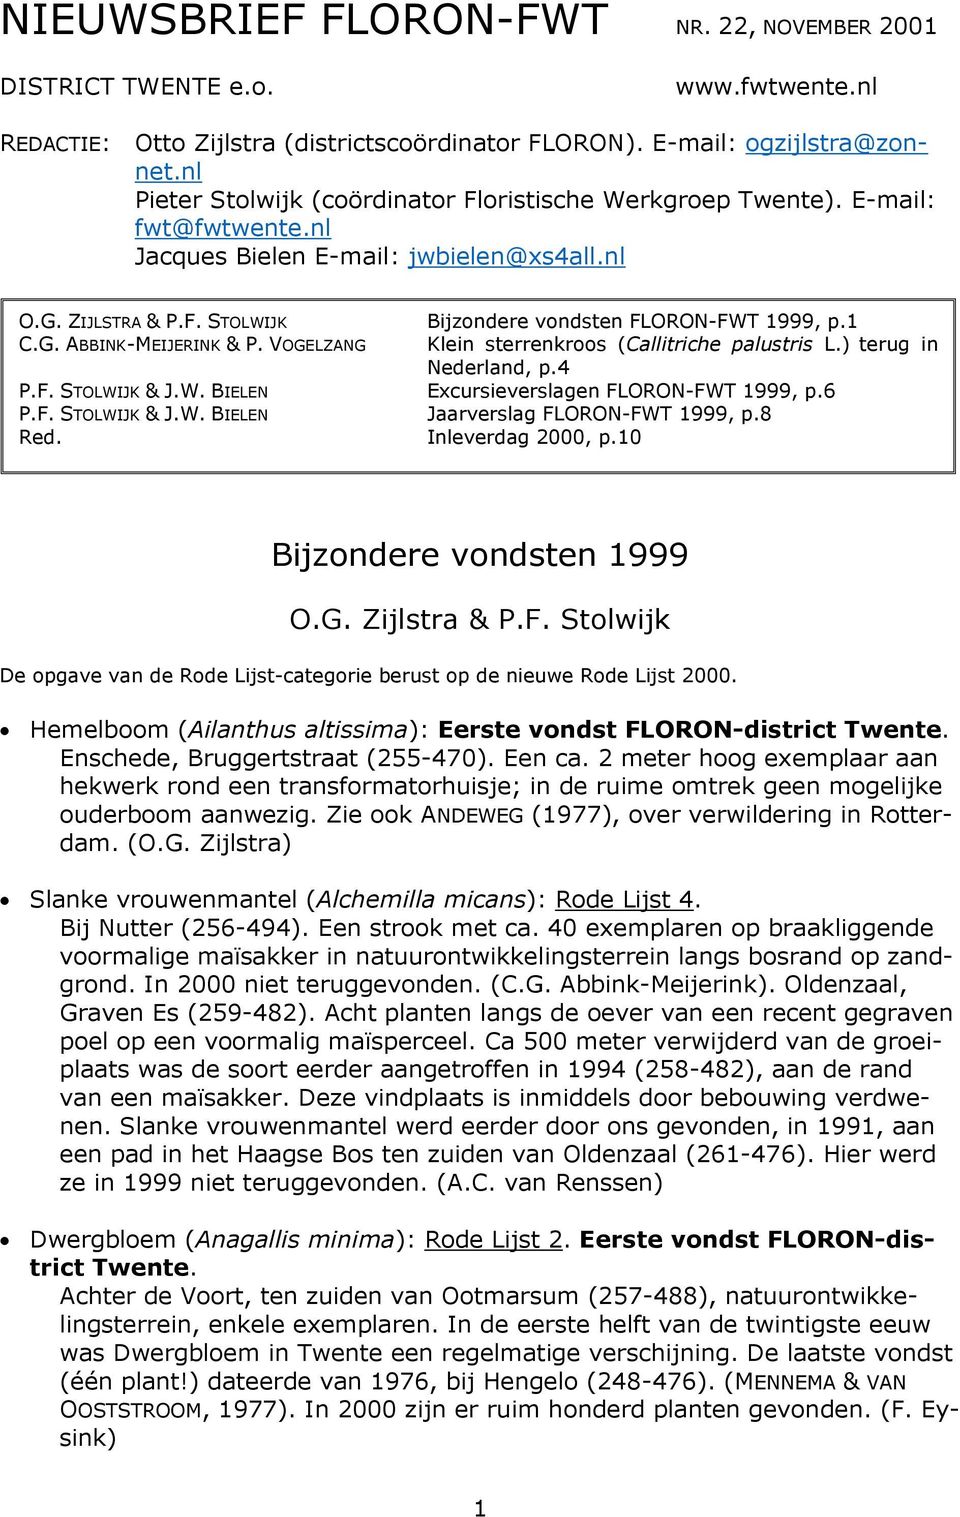 1 C.G. ABBINK-MEIJERINK & P. VOGELZANG Klein sterrenkroos (Callitriche palustris L.) terug in Nederland, p.4 P.F. STOLWIJK & J.W. BIELEN Excursieverslagen FLORON-FWT 1999, p.6 P.F. STOLWIJK & J.W. BIELEN Jaarverslag FLORON-FWT 1999, p.